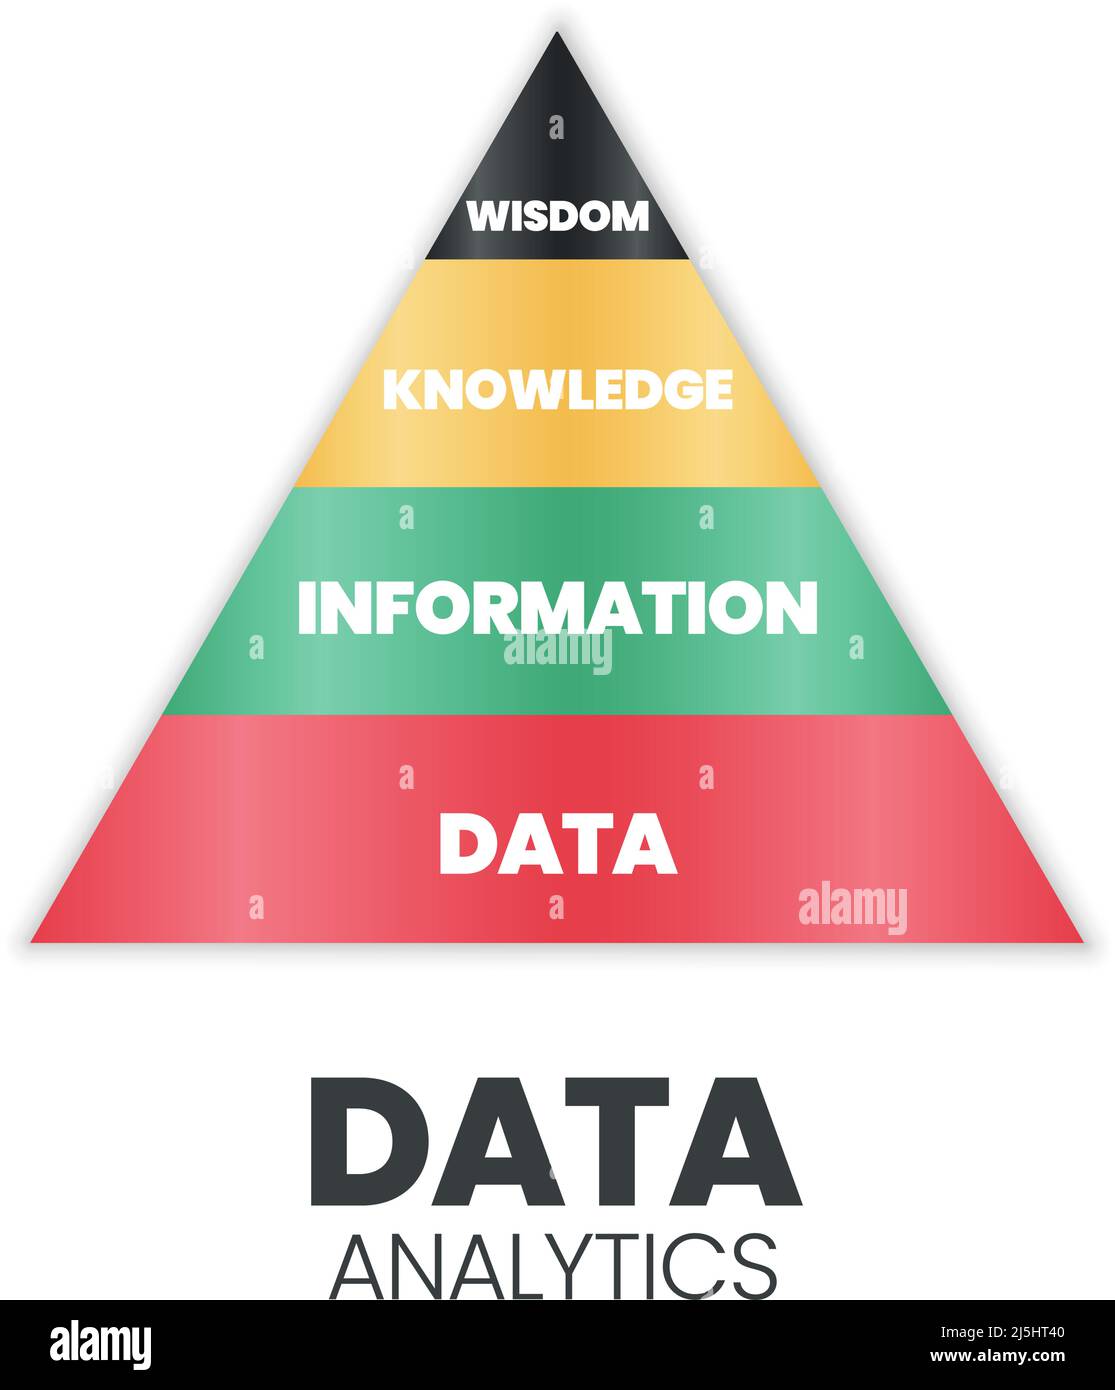 La pyramide d'analyse des données possède une base de données solide (drôle  : base de données) qui contient des informations, des connaissances et de  la sagesse. Il suggère de suivre le chemin